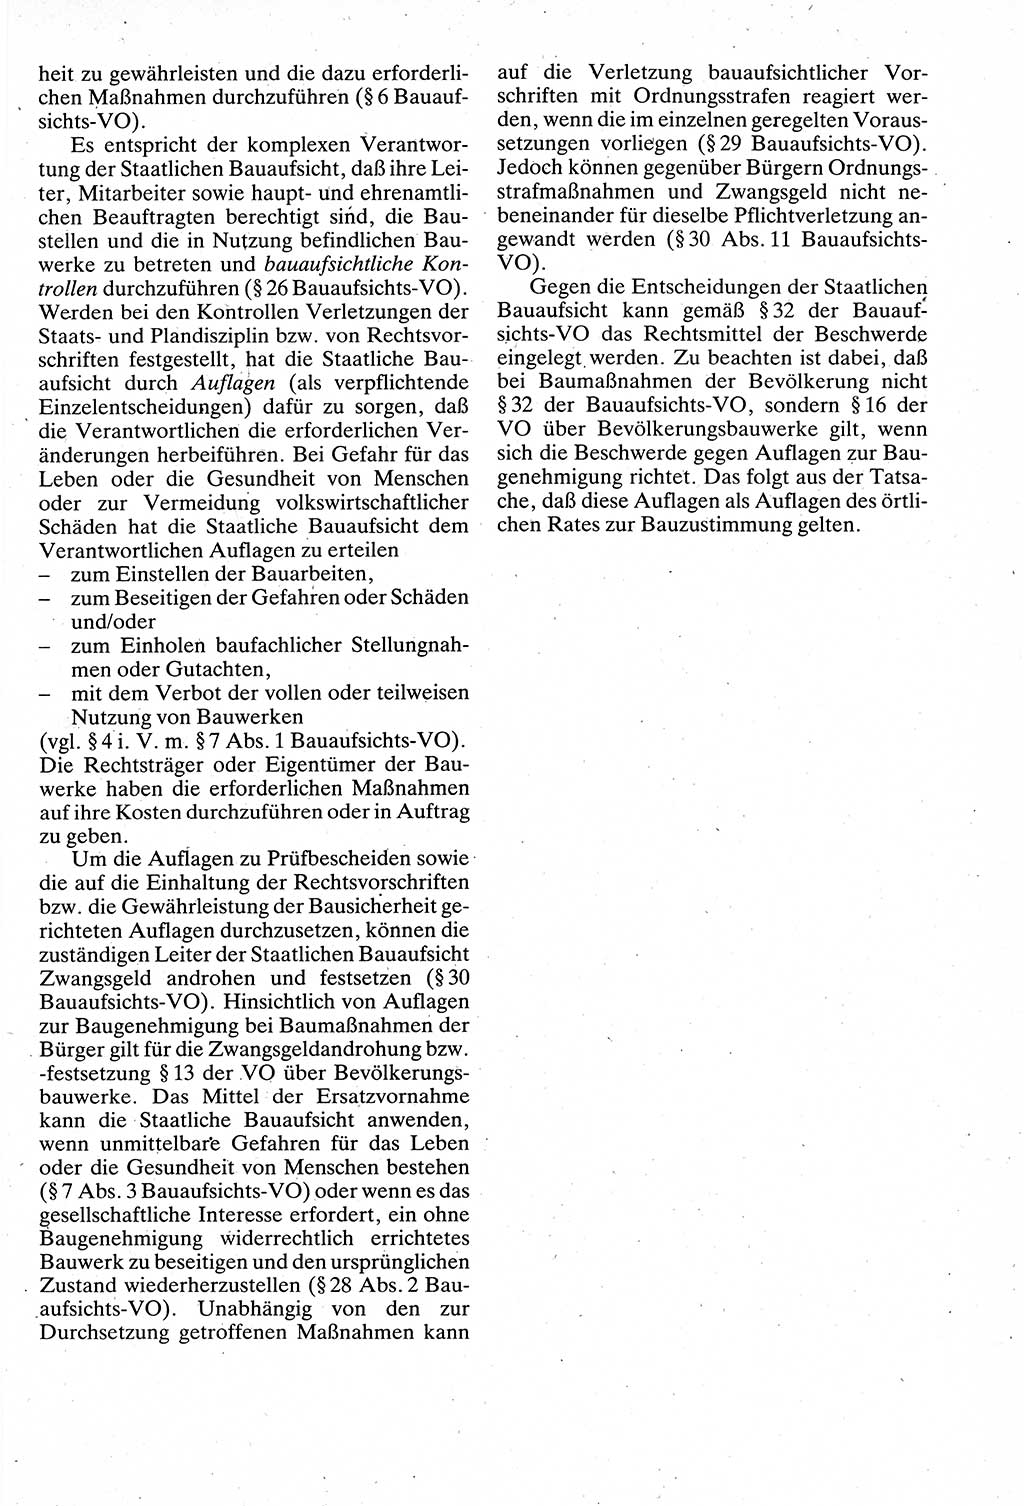 Verwaltungsrecht [Deutsche Demokratische Republik (DDR)], Lehrbuch 1988, Seite 247 (Verw.-R. DDR Lb. 1988, S. 247)